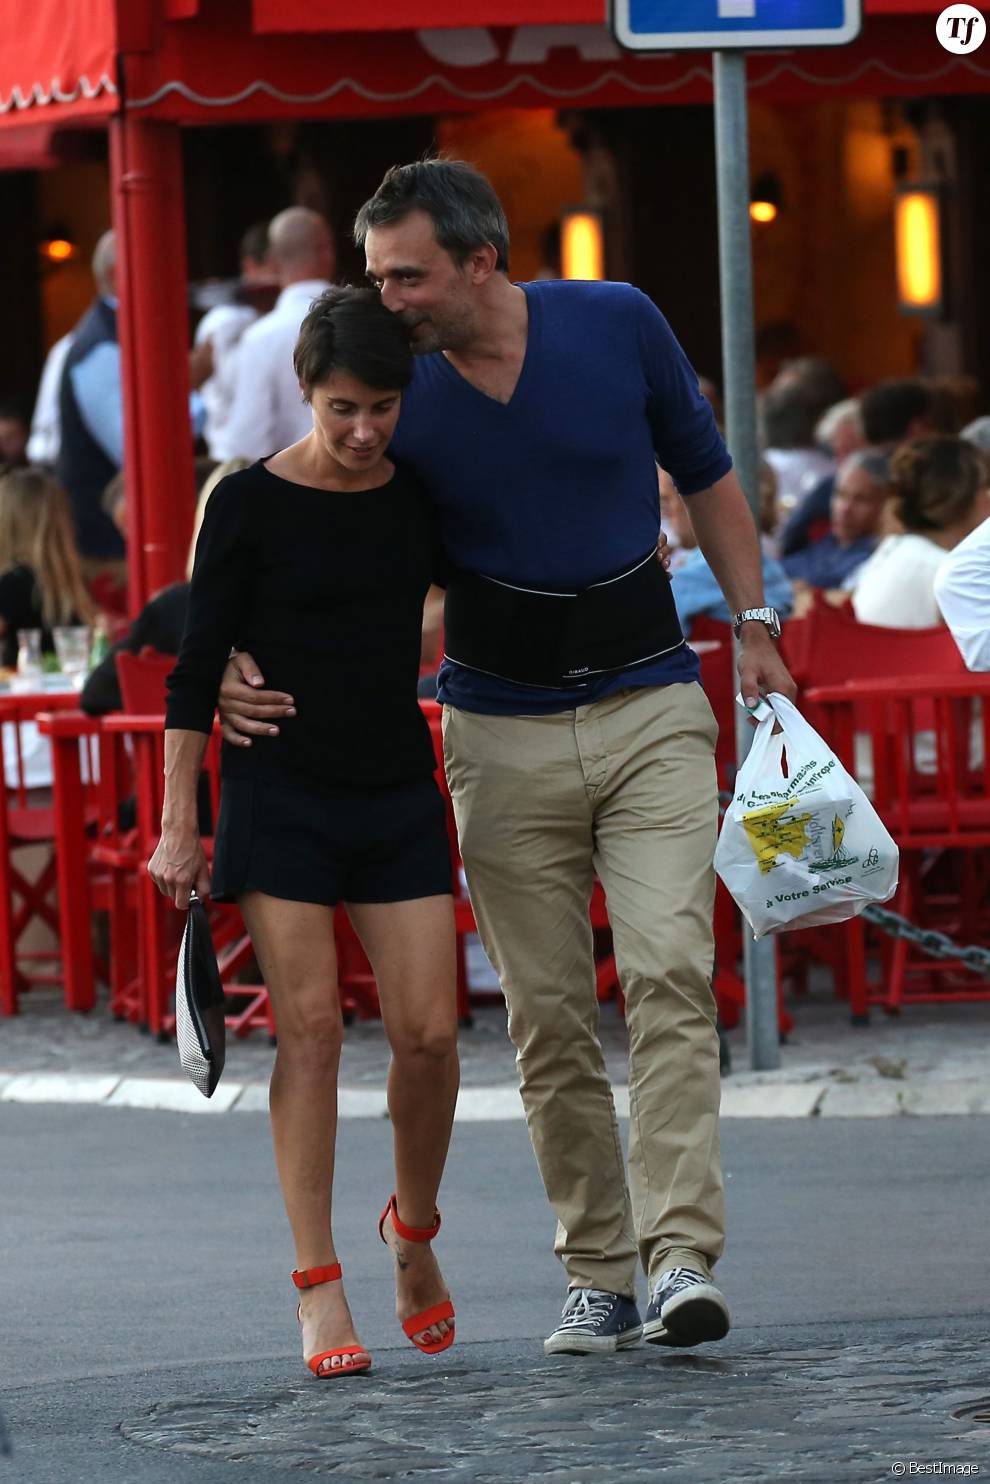  Alessandra Sublet et son mari Clément Miserez, très amoureux, en balade sur le port de Saint-Tropez, le 10 juillet 2015. Clément Miserez doit avoir des problèmes de dos il porte une ceinture de maintien lombaire. 